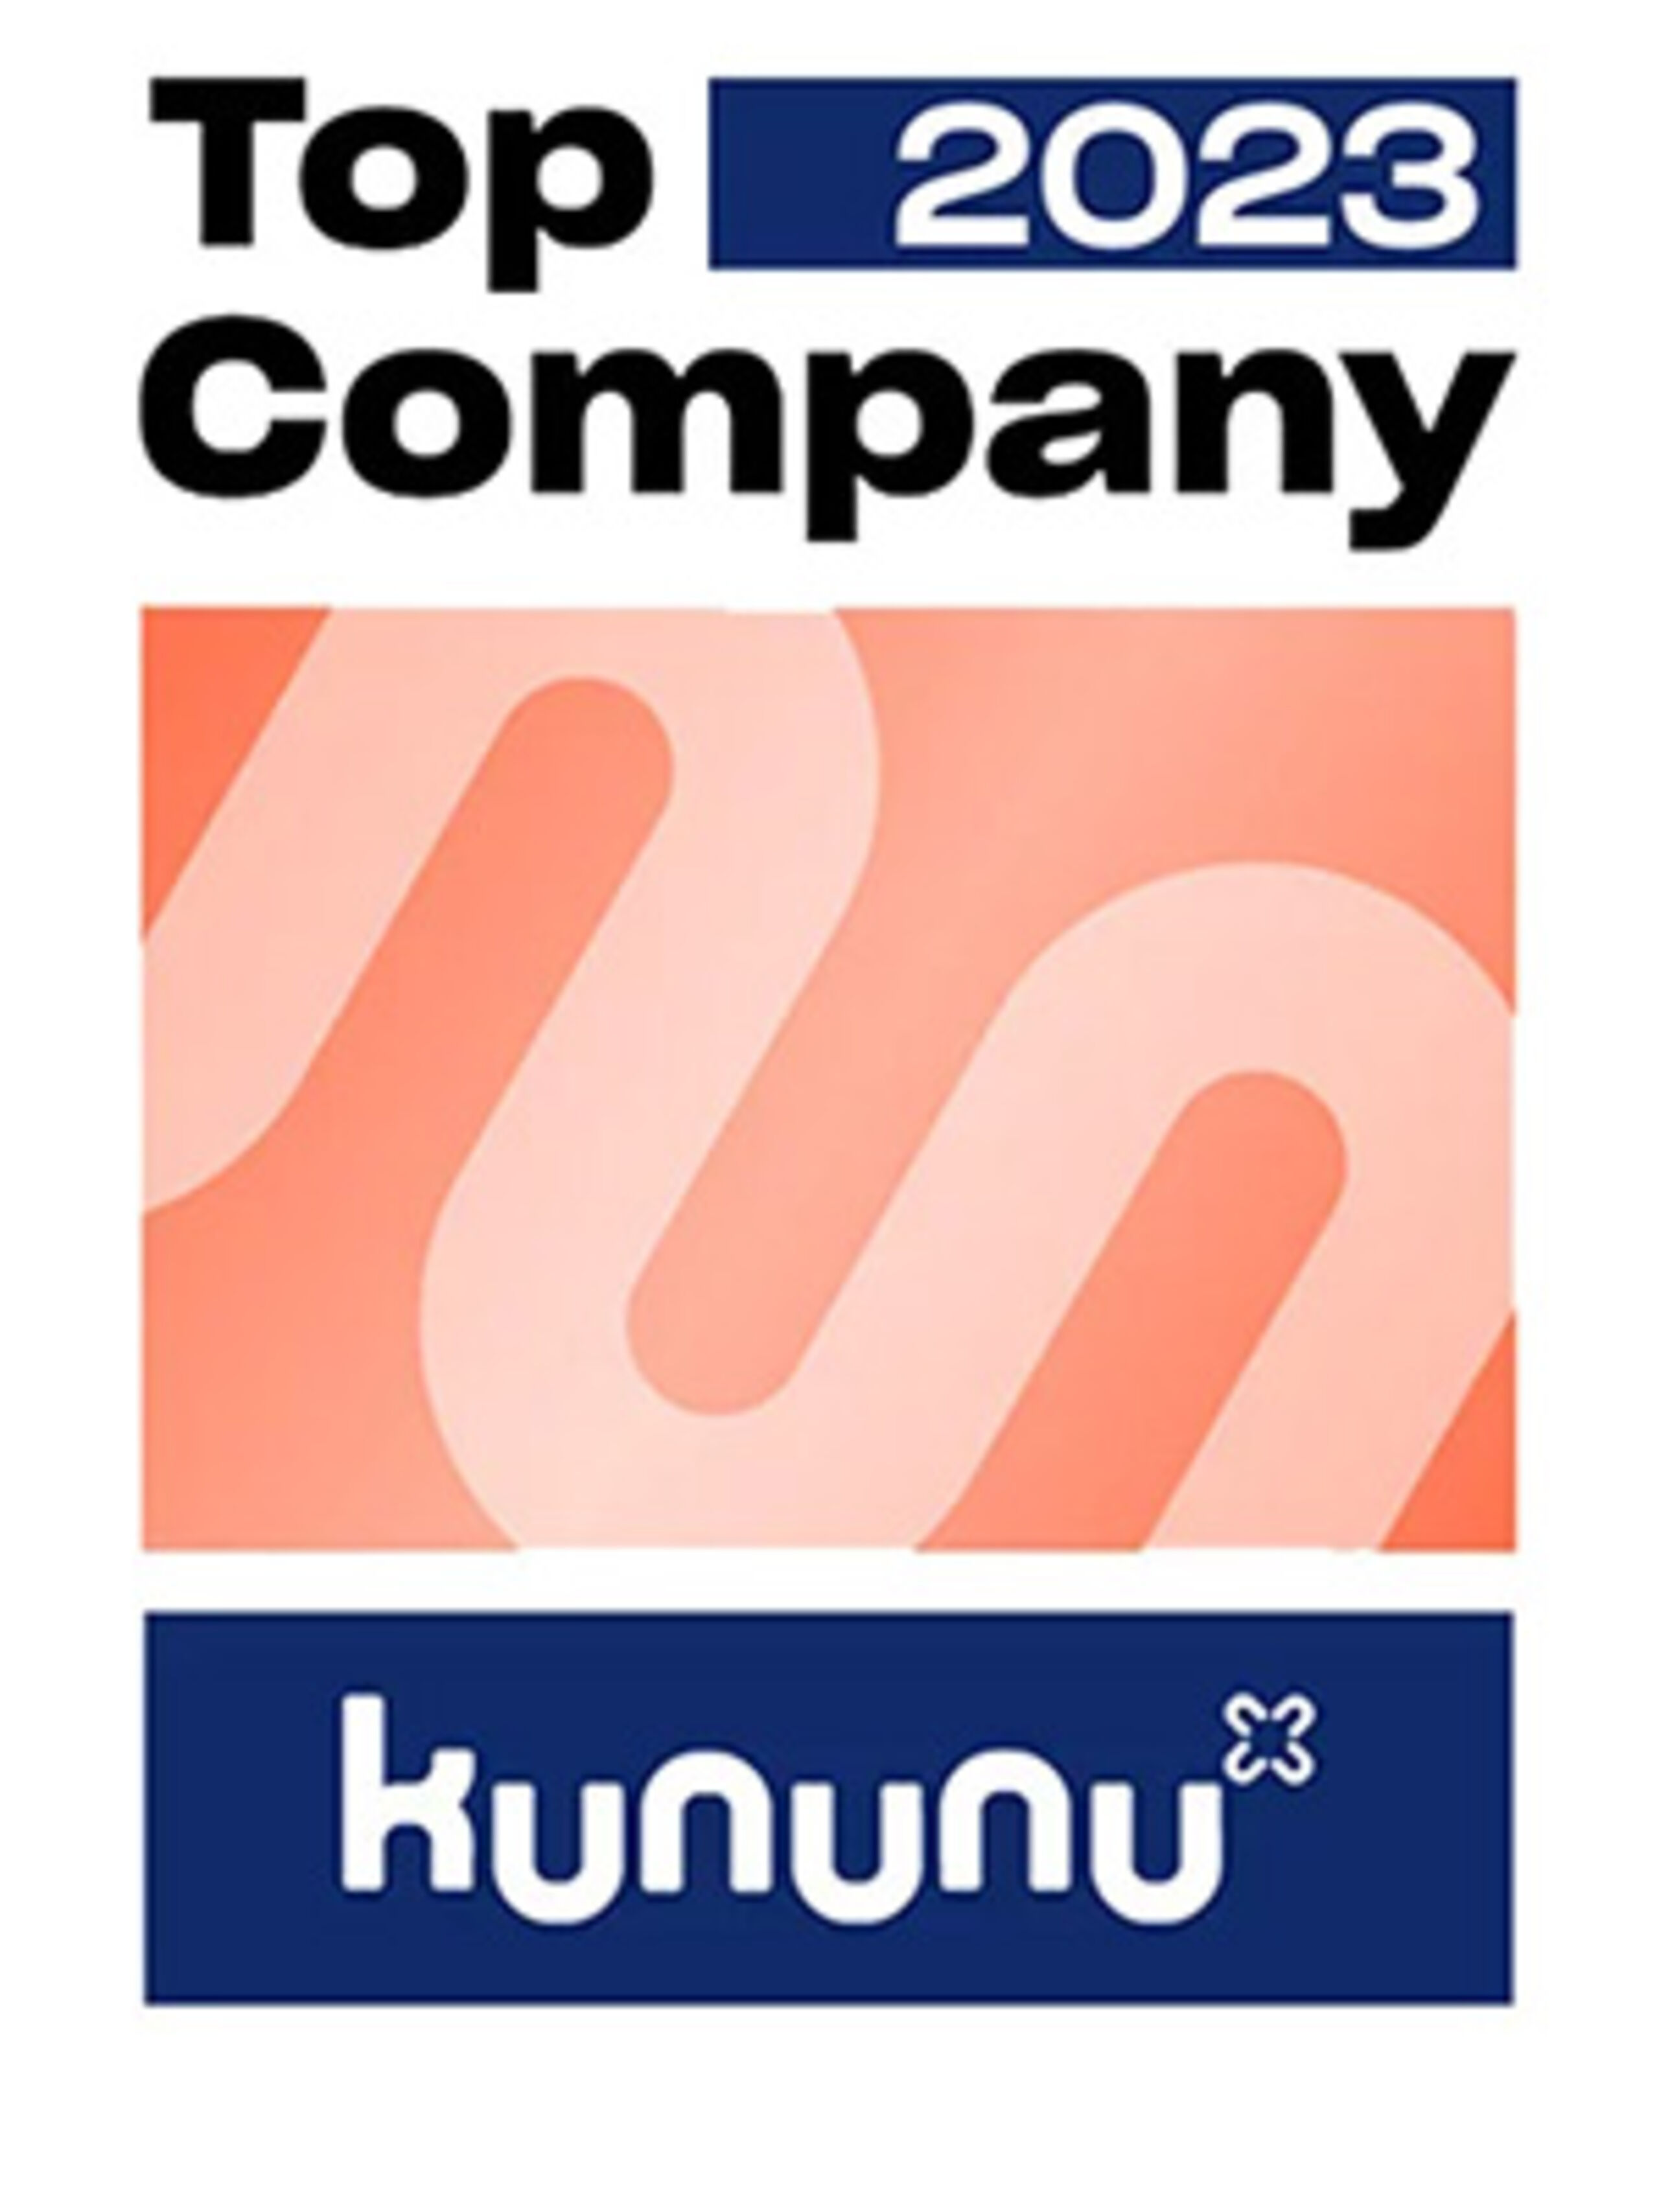 Top Company Kununu - Jobs an der Ostsee am Weissenhäuser Strand